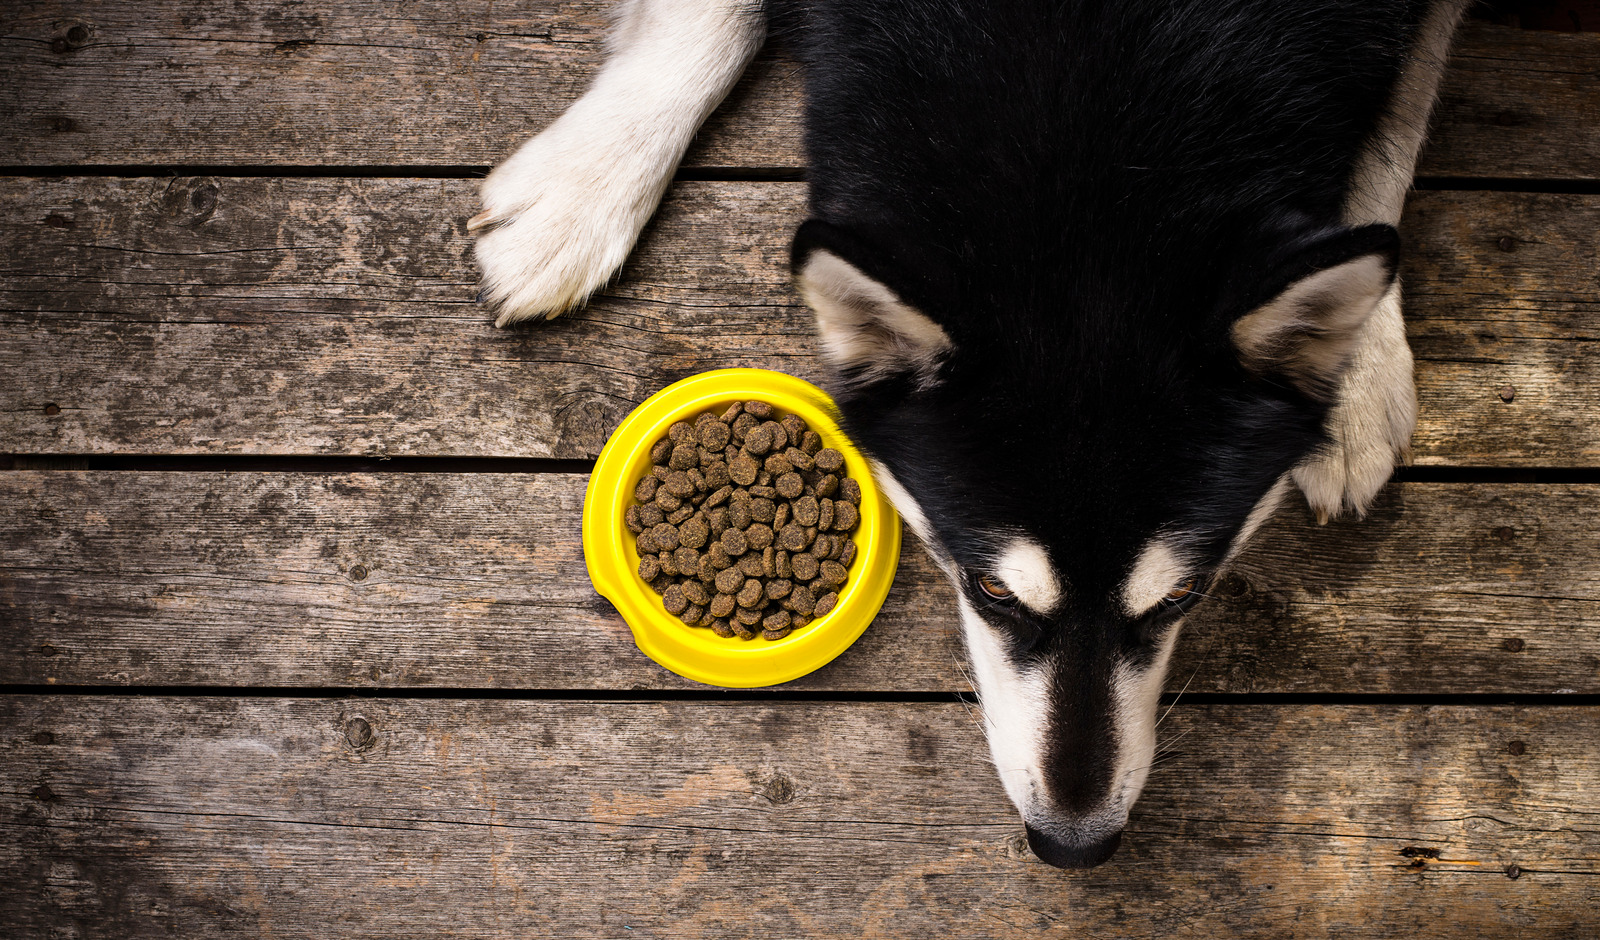 Allergie bij hond beagle die aan zijn poot bijt van de jeuk|Zwarte husky met voedselallergie ligt op houten vloer met brokjes in geel bakje naast zijn kop